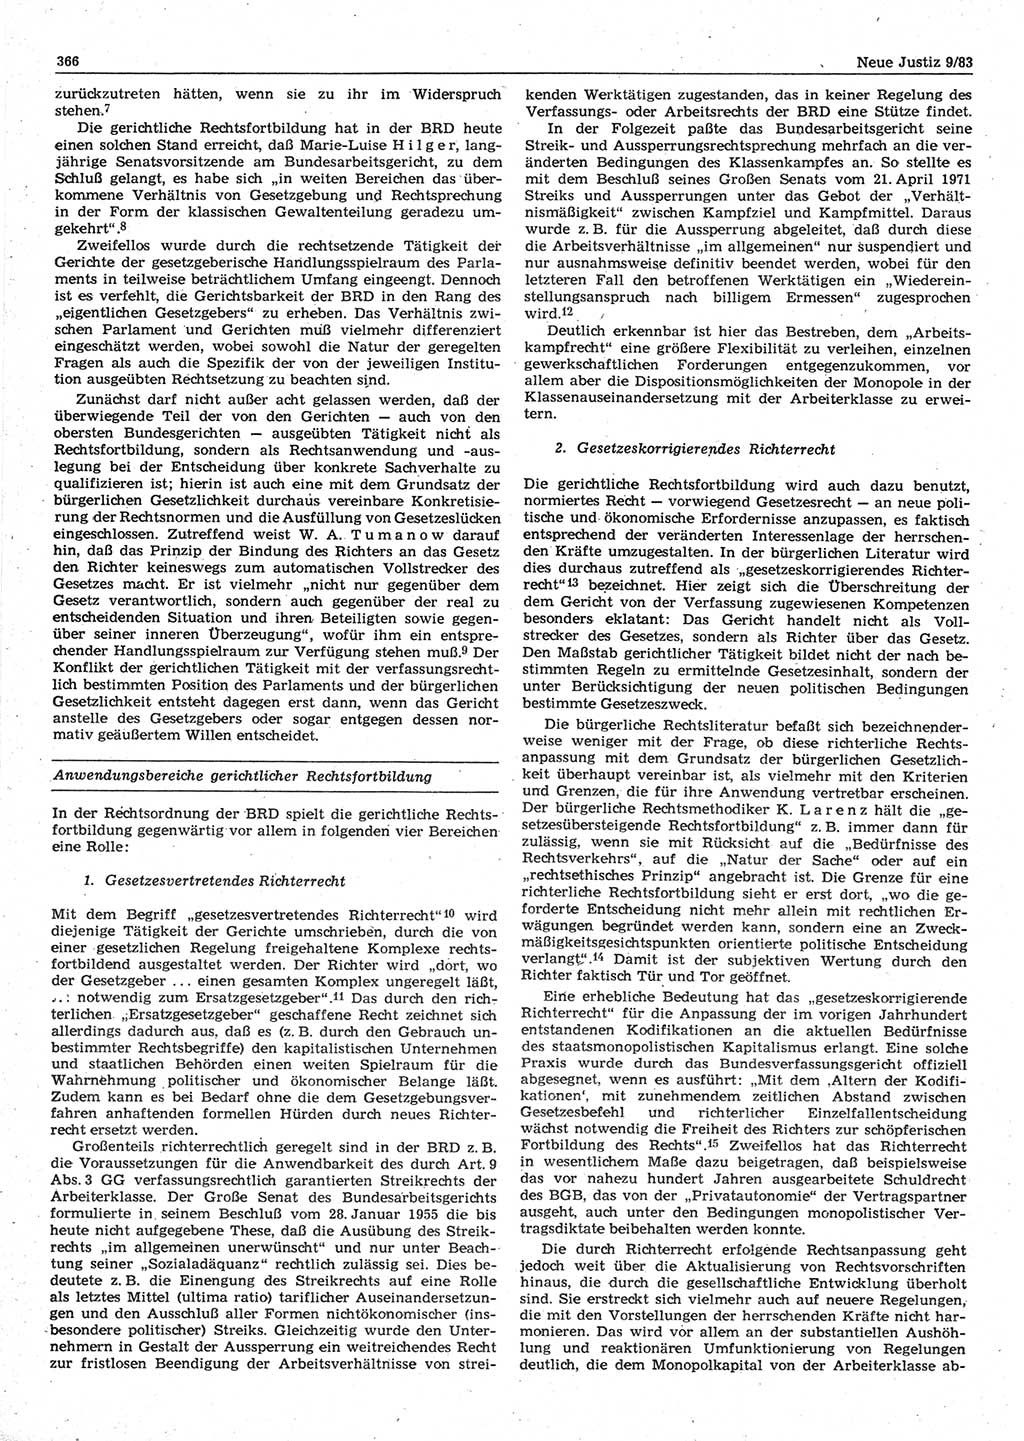 Neue Justiz (NJ), Zeitschrift für sozialistisches Recht und Gesetzlichkeit [Deutsche Demokratische Republik (DDR)], 37. Jahrgang 1983, Seite 366 (NJ DDR 1983, S. 366)